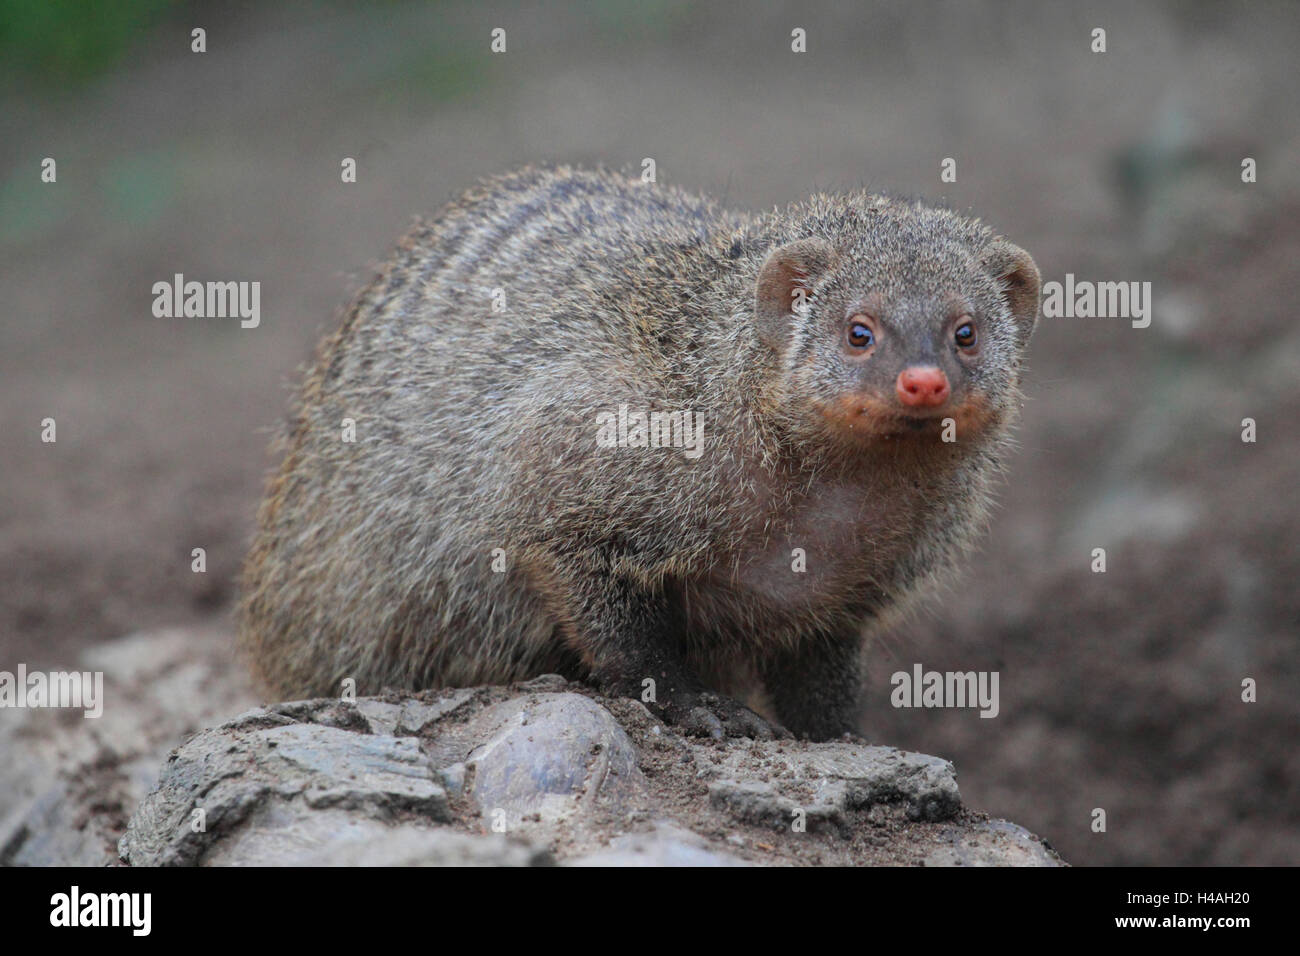 Banded mongoose, Mungos mungo Stock Photo